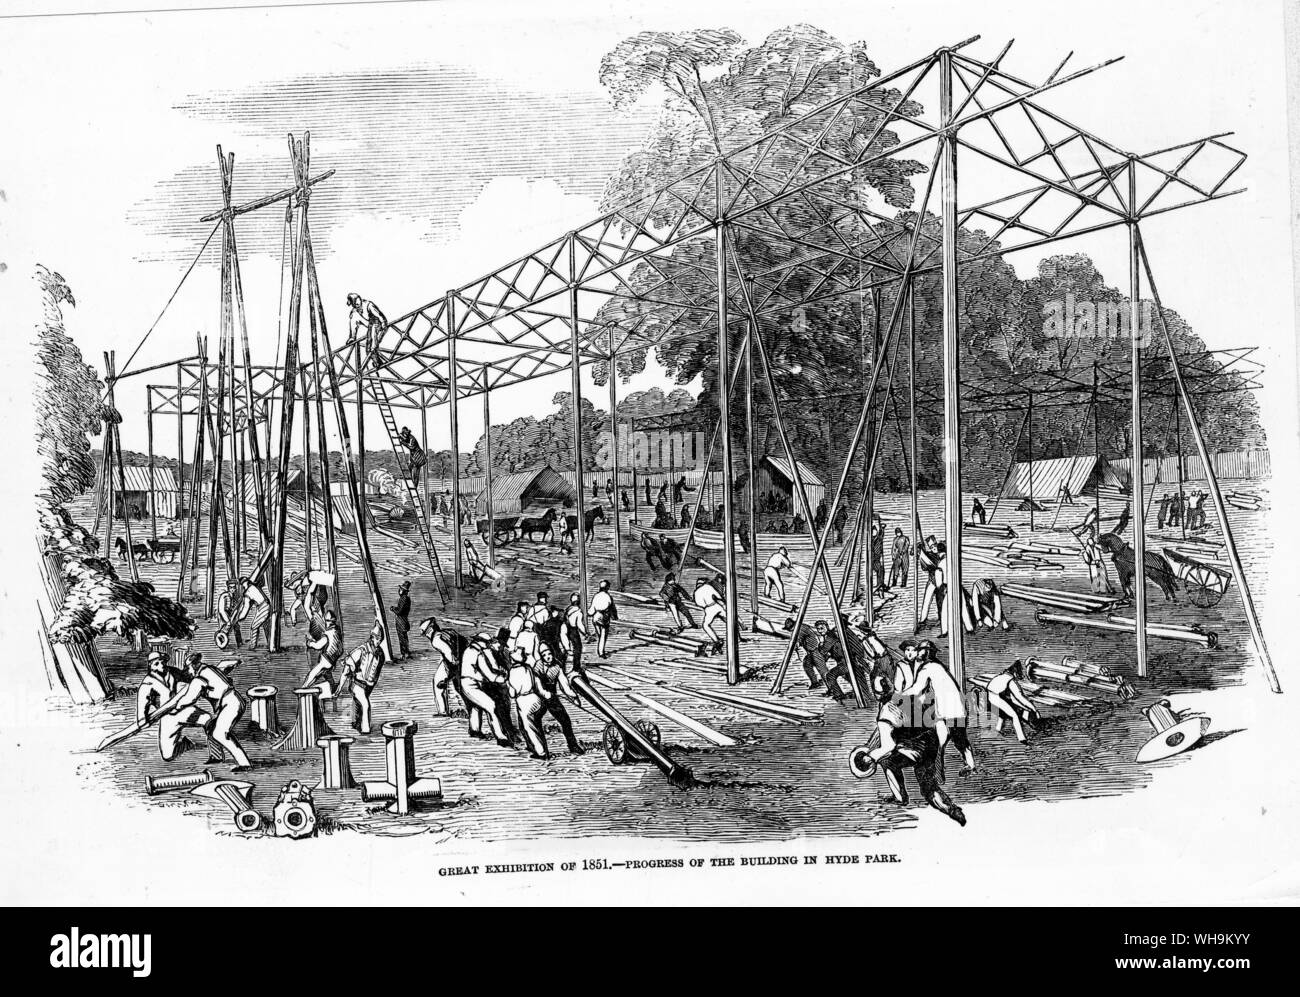 Die Weltausstellung von 1851 - Fortschritte der Gebäude im Hyde Park.". Illustrated London News Okt. 12 1850. Stockfoto